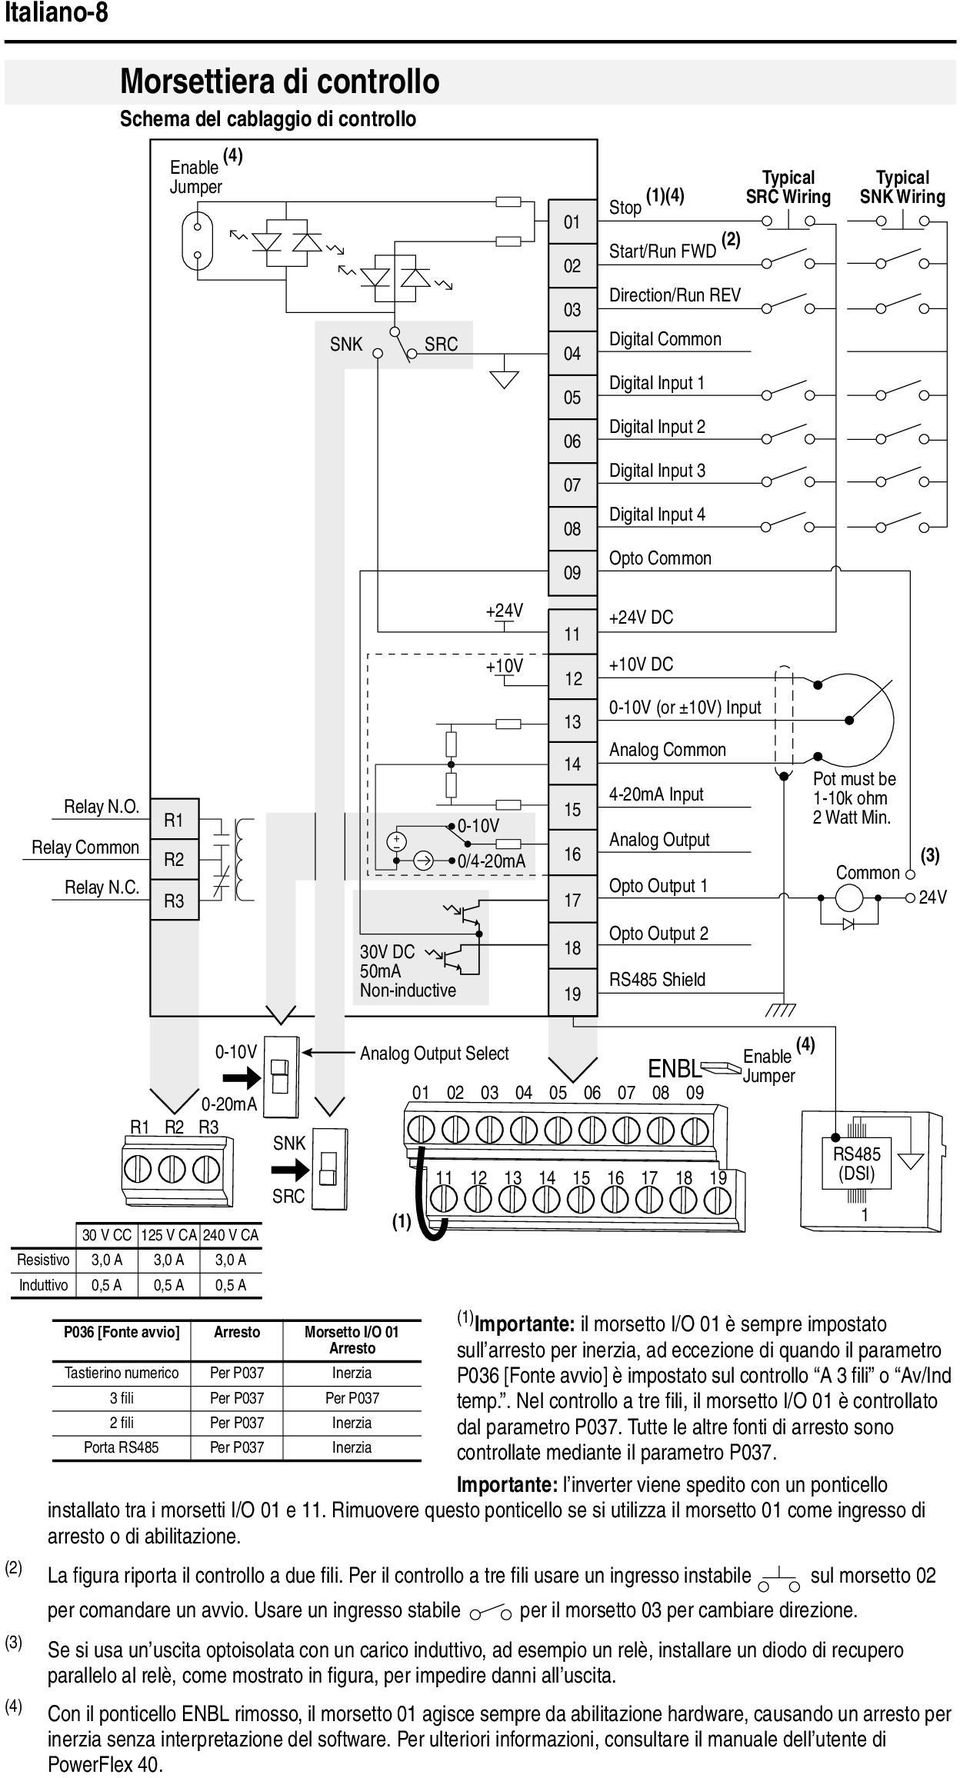 Morsettiera di controllo Schema del cablaggio di controllo Enable (4) Jumper R1 R2 R3 SNK SRC 3V DC 5mA Non-inductive +24V +1V -1V /4-2mA 1 2 3 4 5 6 7 8 9 11 12 13 14 15 16 17 18 19 Stop (1)(4)